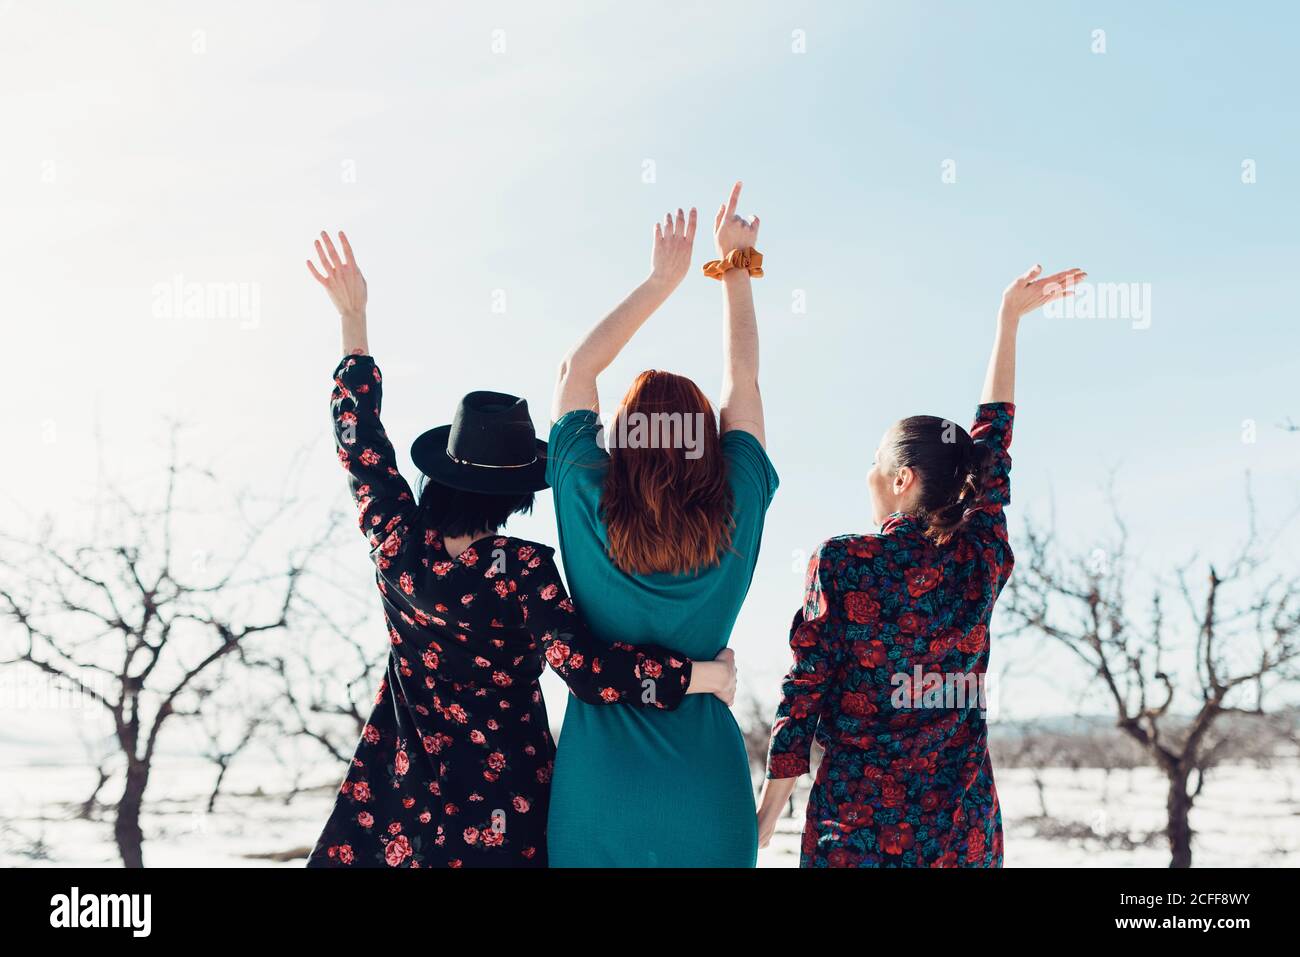 Fröhliche junge Freundinnen in bunten Kleidern mit Spaß und stehend Auf Schnee im Winterfeld mit Baumbepflanzung Stockfoto